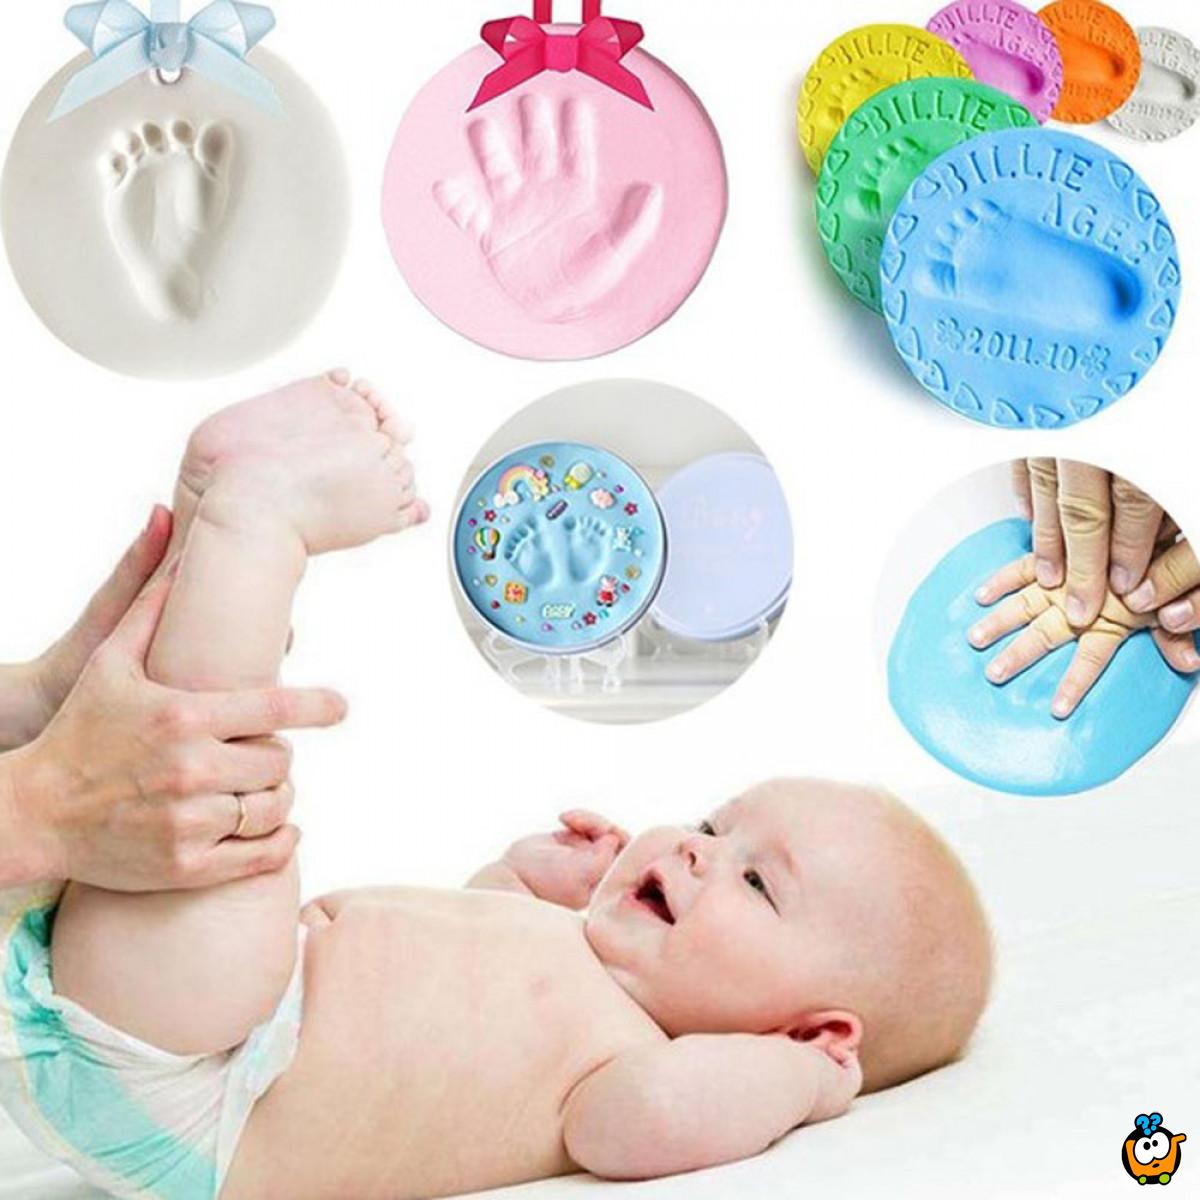 Baby Print - Penasta masa za otisak bebinih šaka i stopala